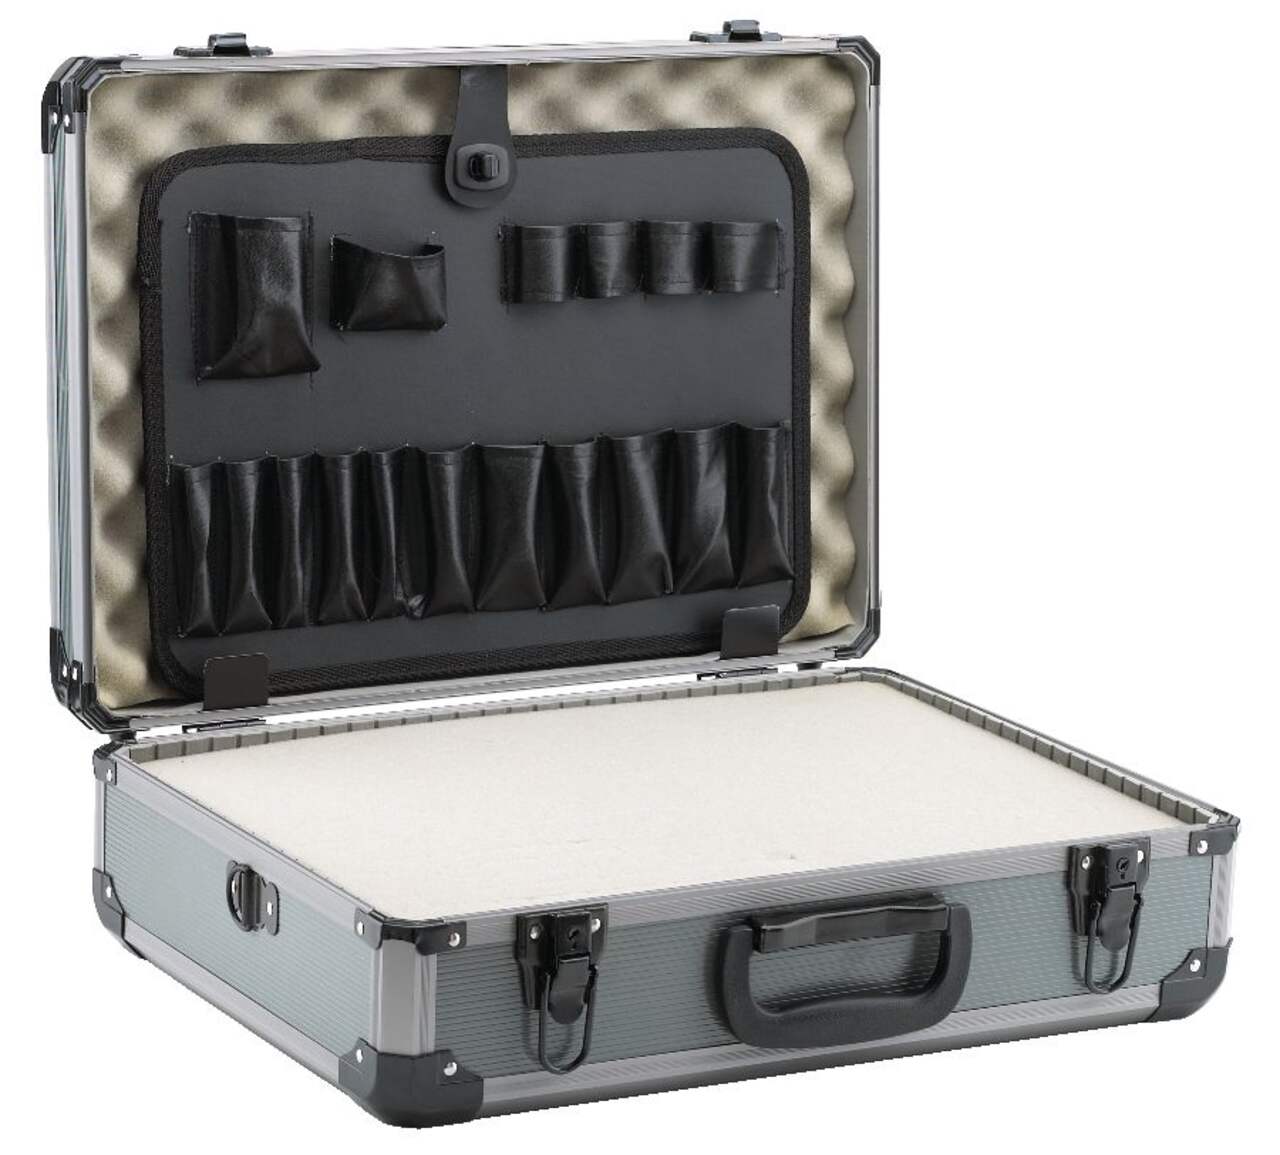 Boîtes de tri Boîte de rangement d'outils en plastique réglable  Organisateur d'outils